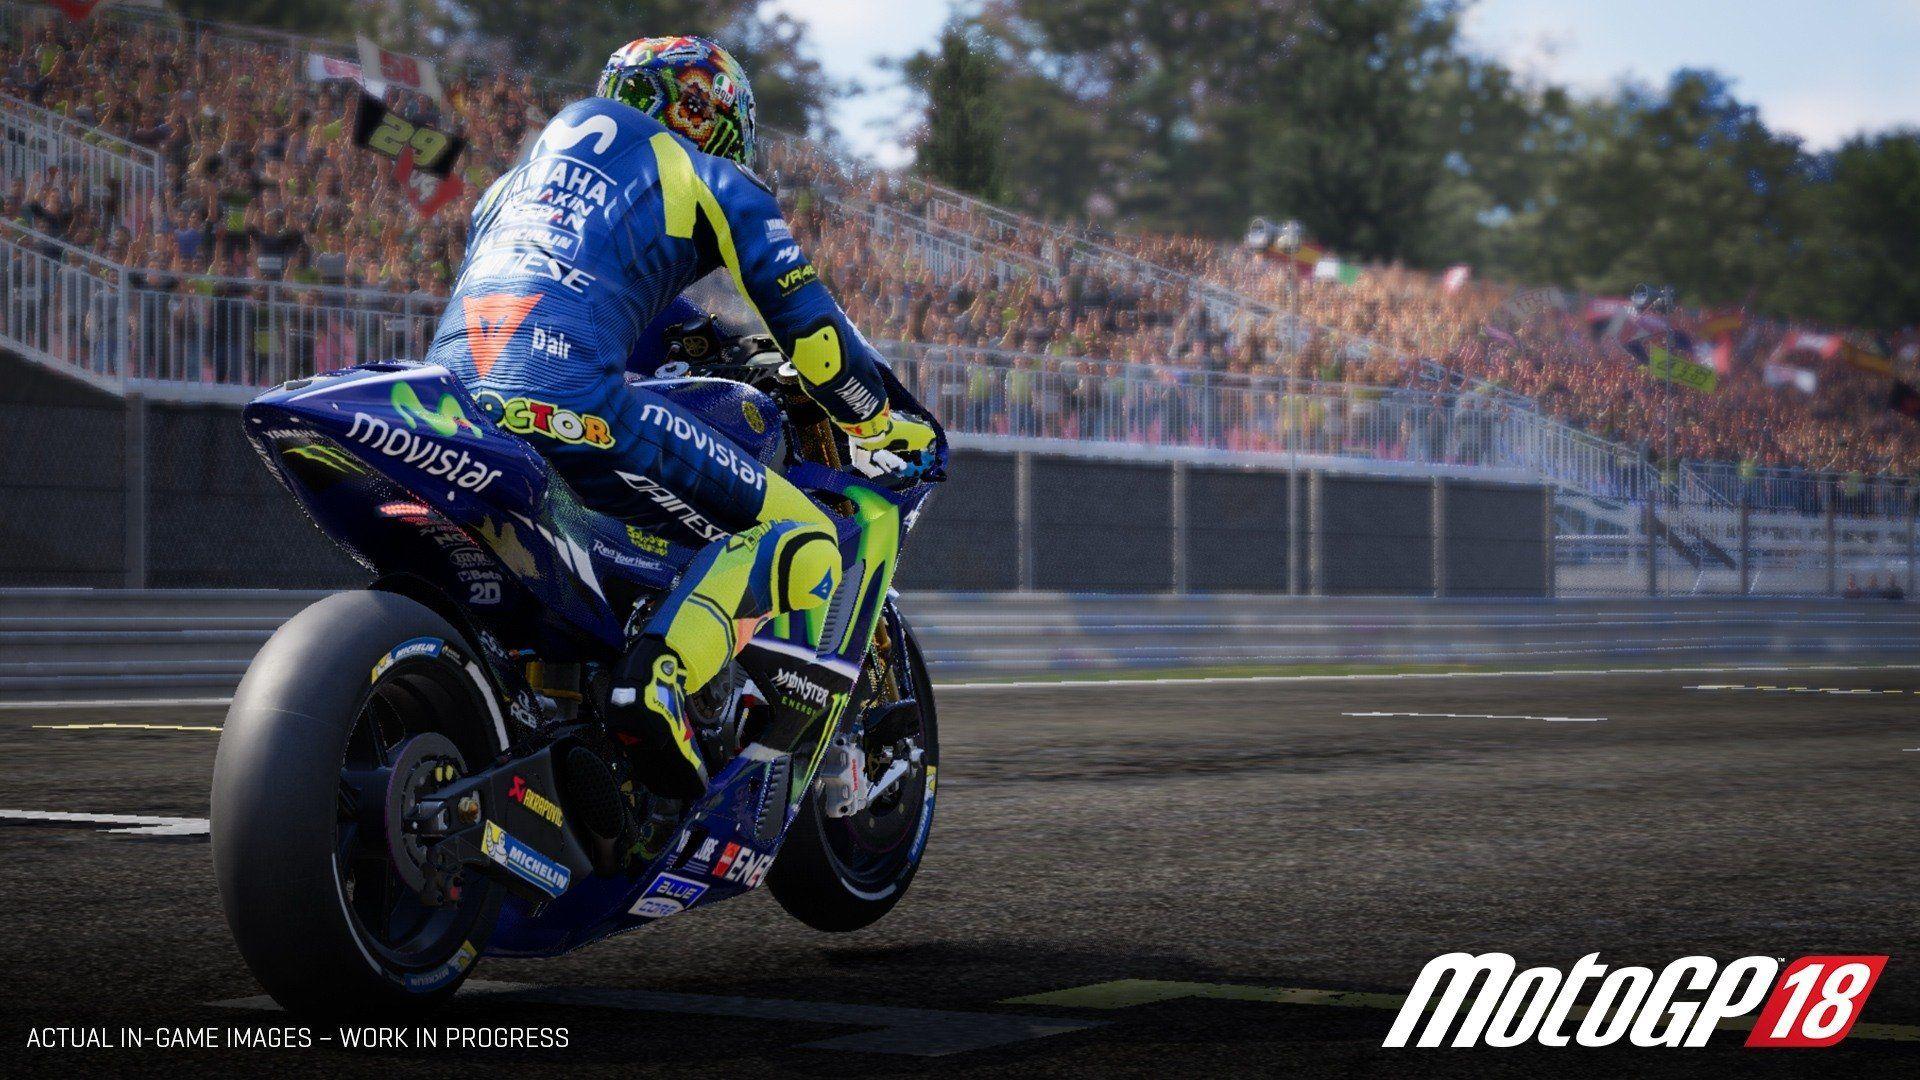 MotoGP 18 Screenshots, Picture, Wallpaper